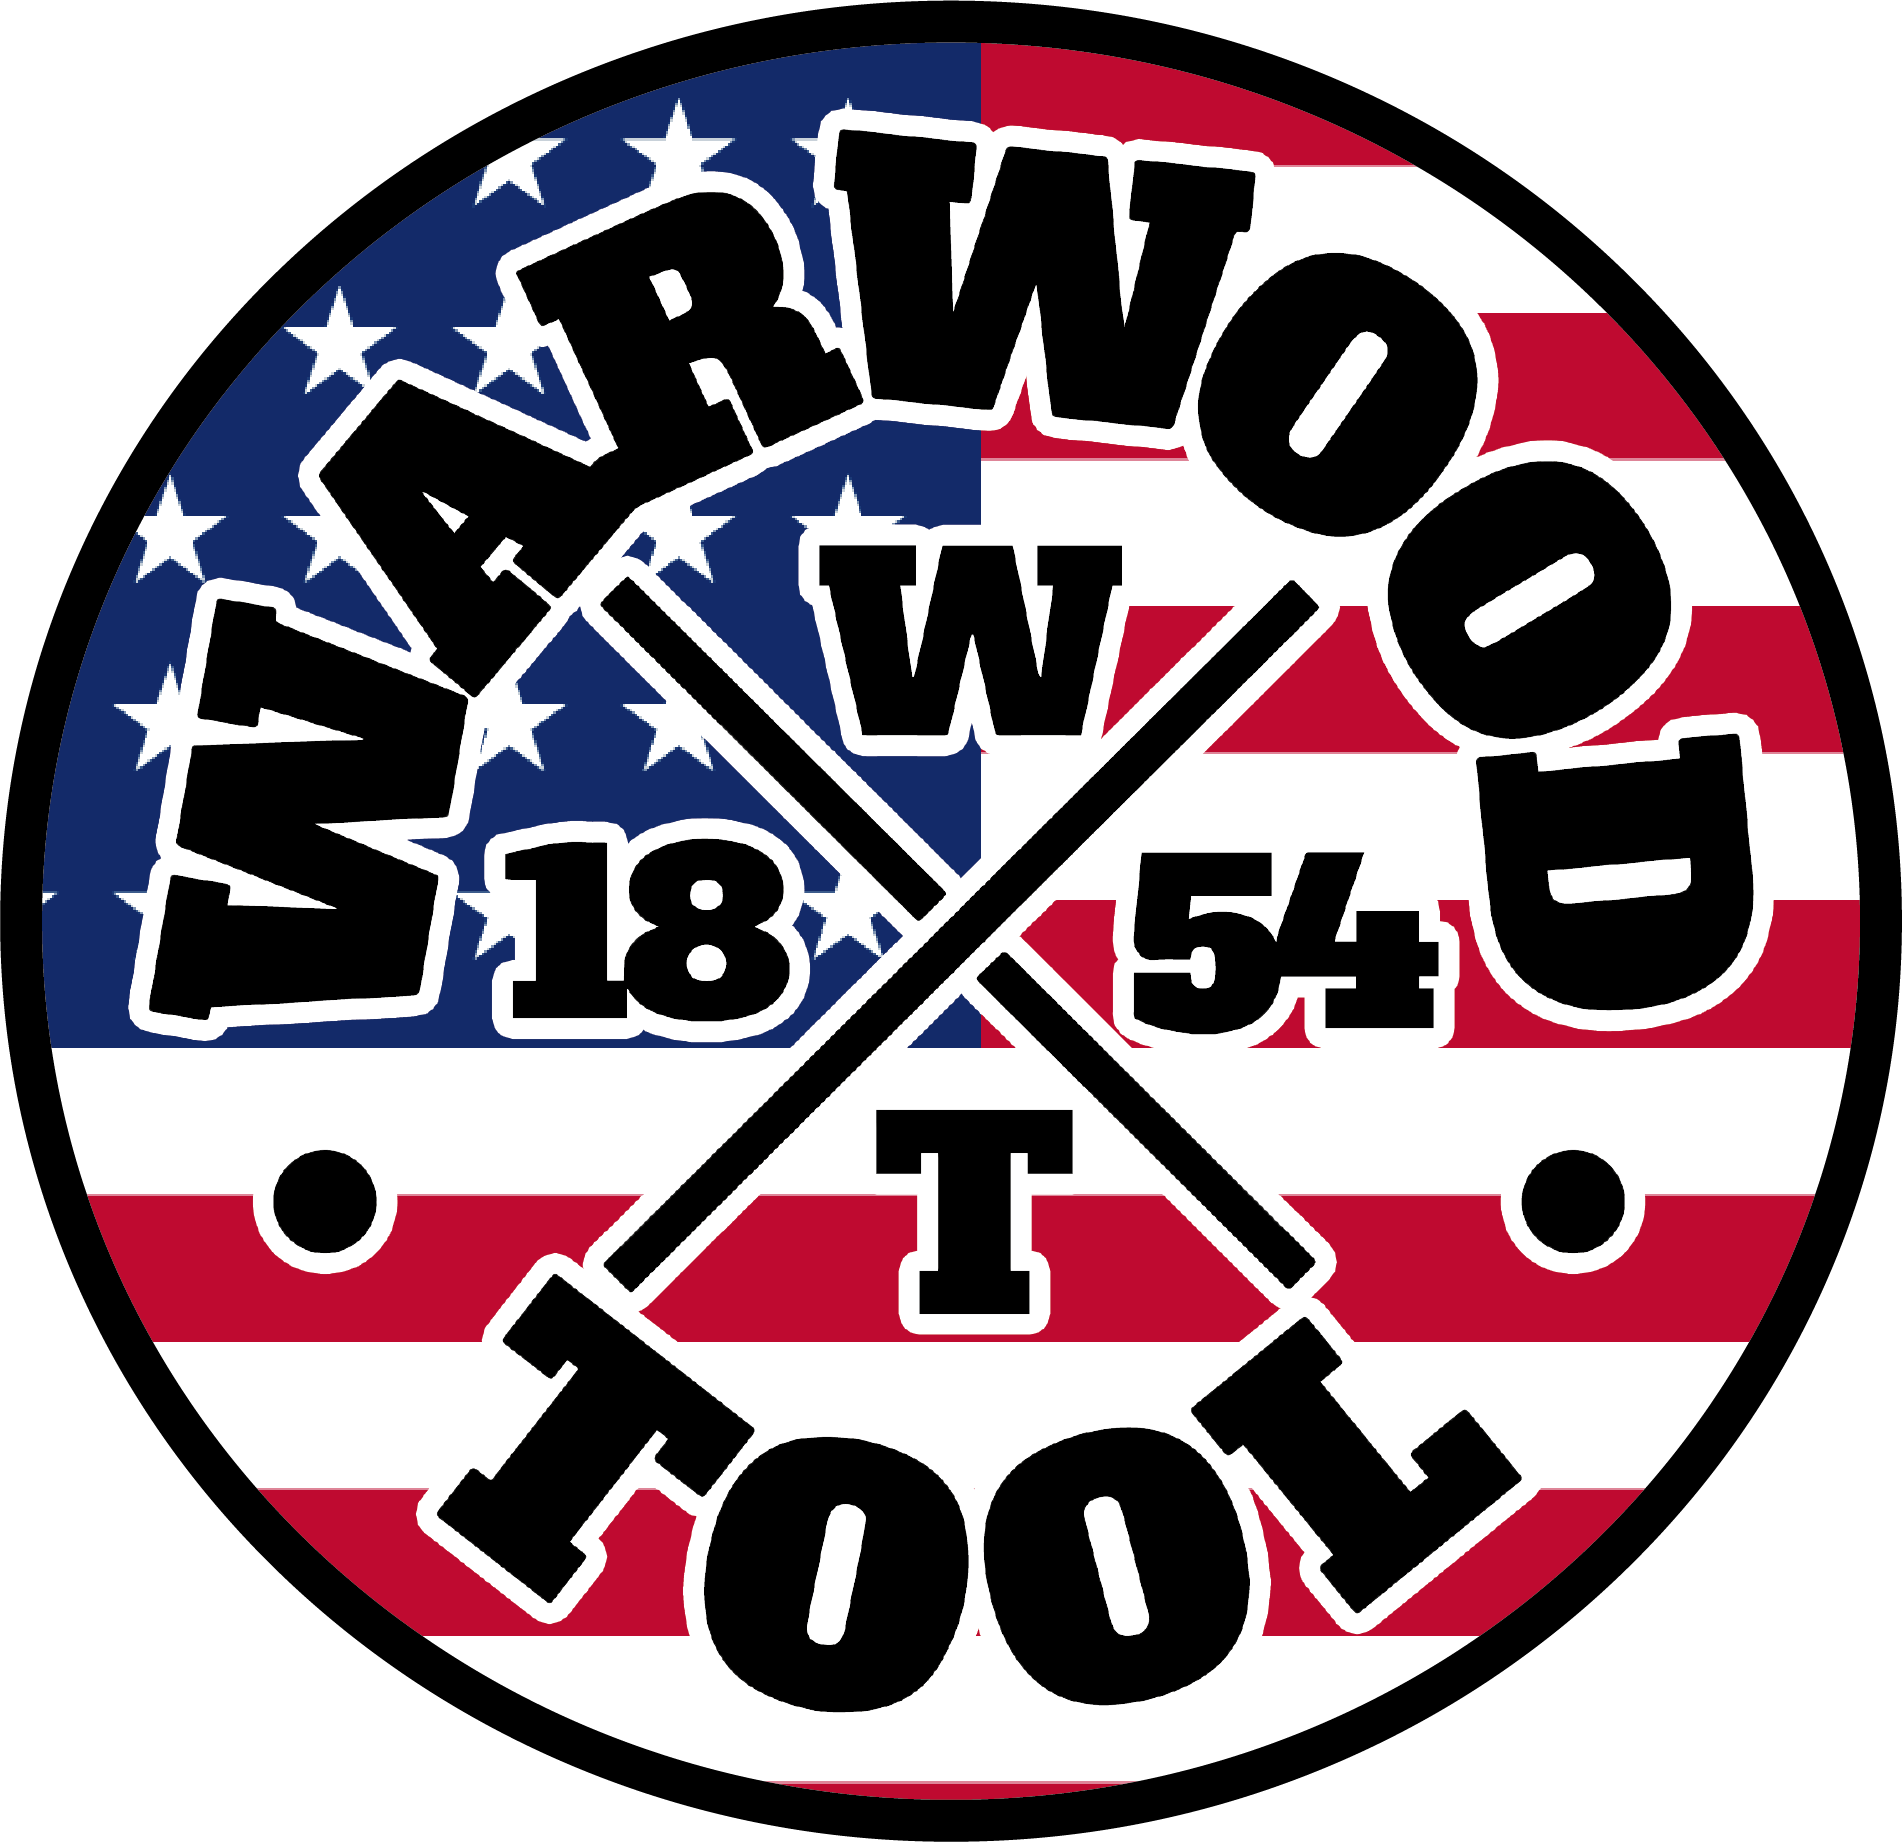 Warwood Tool